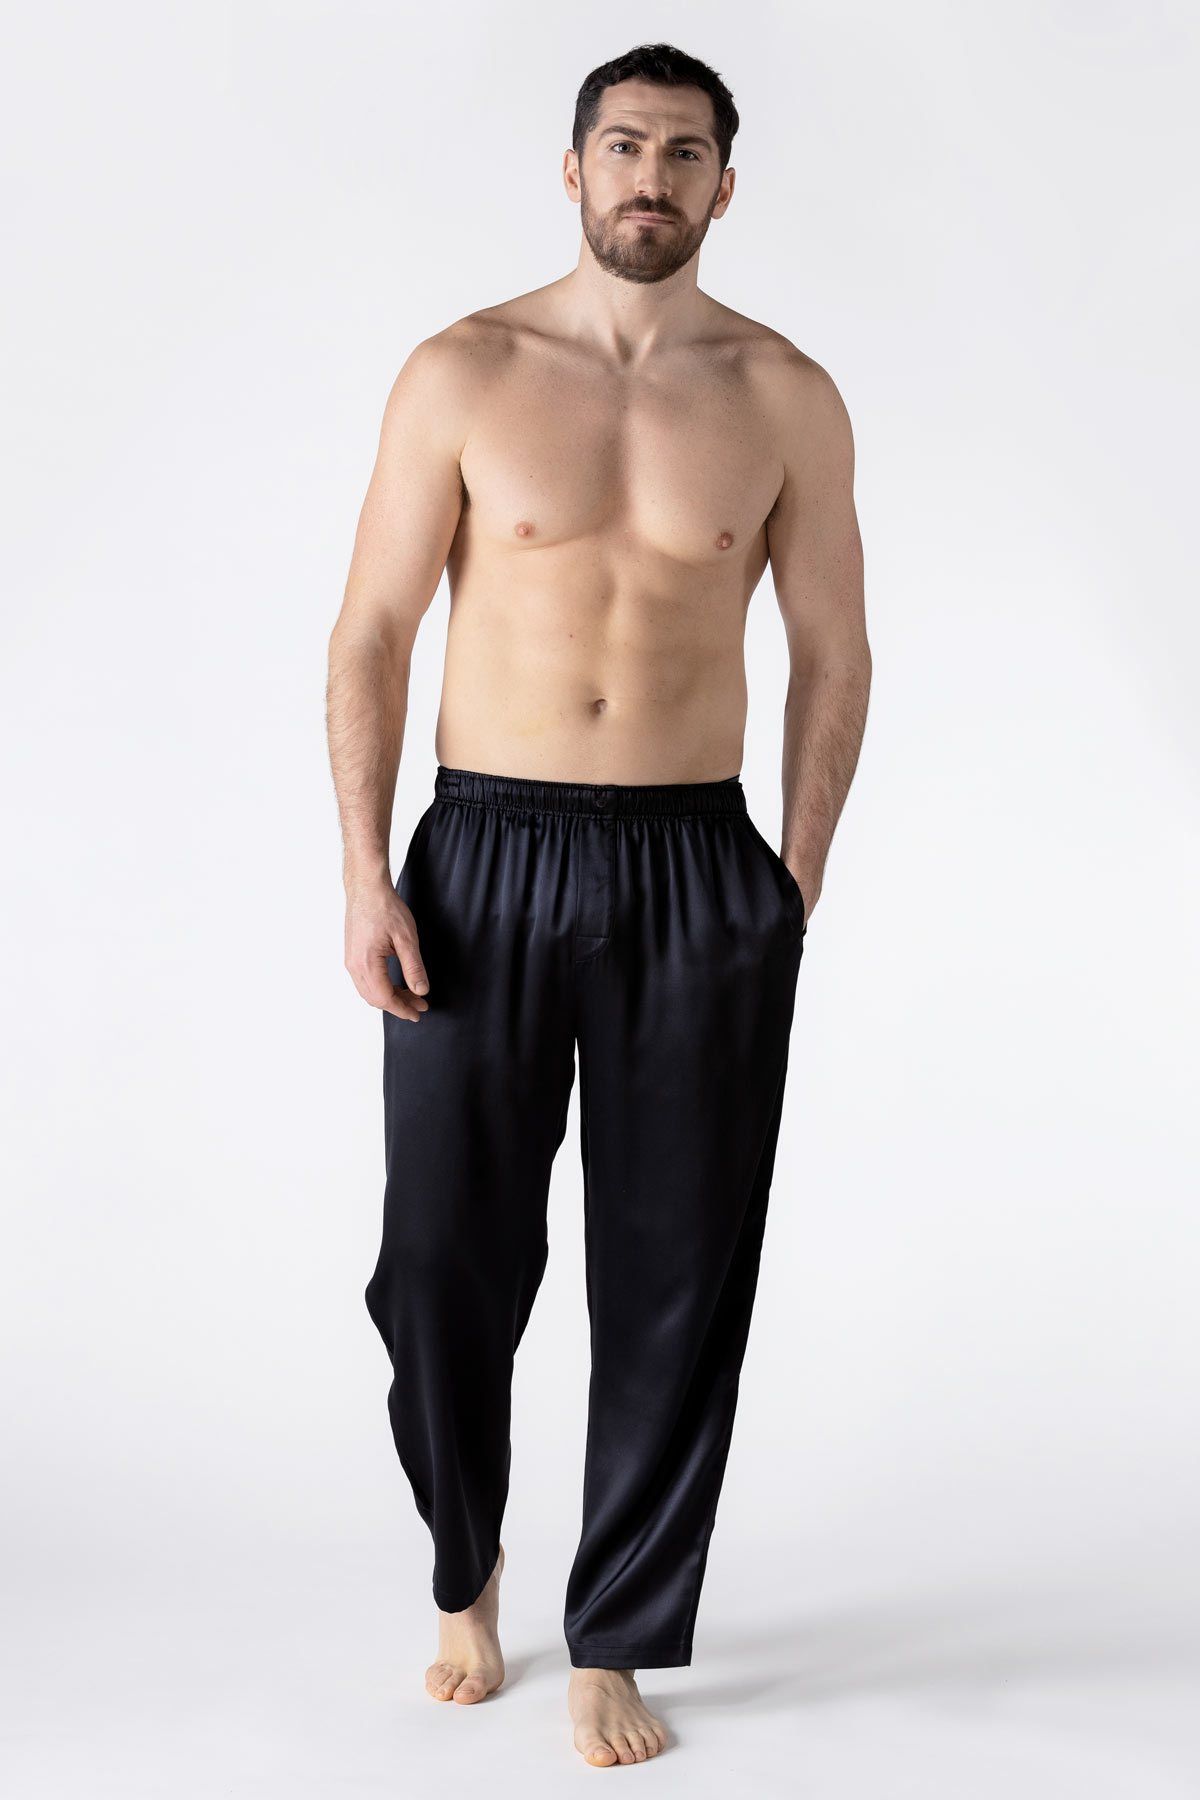 2-pack Regular Fit Pajama Pants - Black/dark gray melange - Men | H&M US